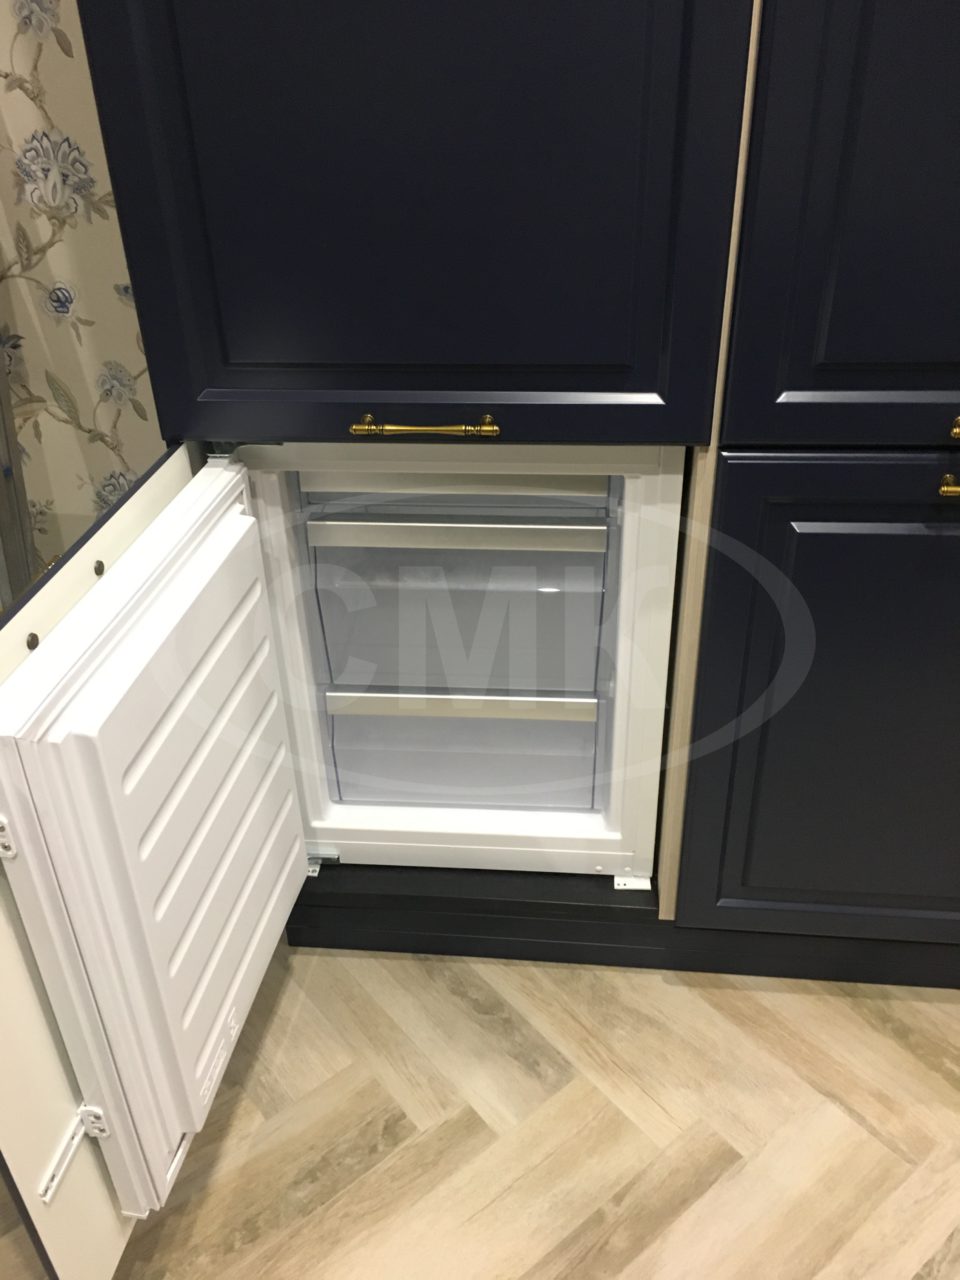 Шкаф для кухни на заказ со встроенным холодильником, фасады МДФ крашенные (цвет синий), ручки бронза.